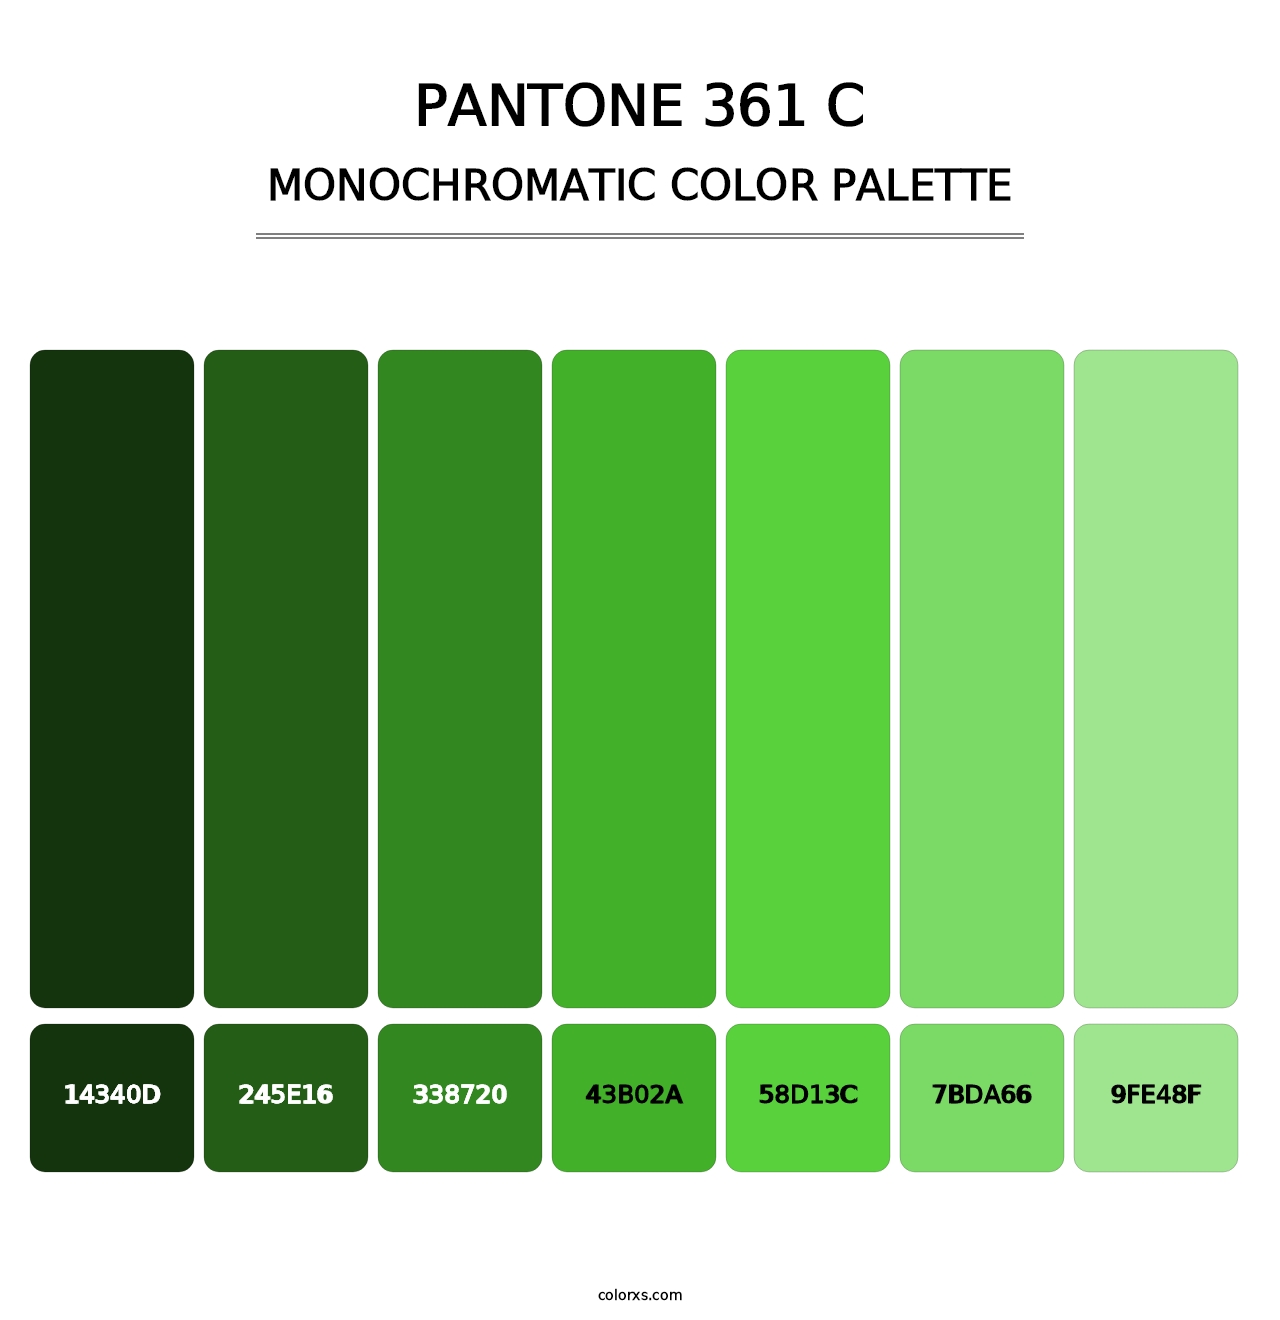 PANTONE 361 C - Monochromatic Color Palette